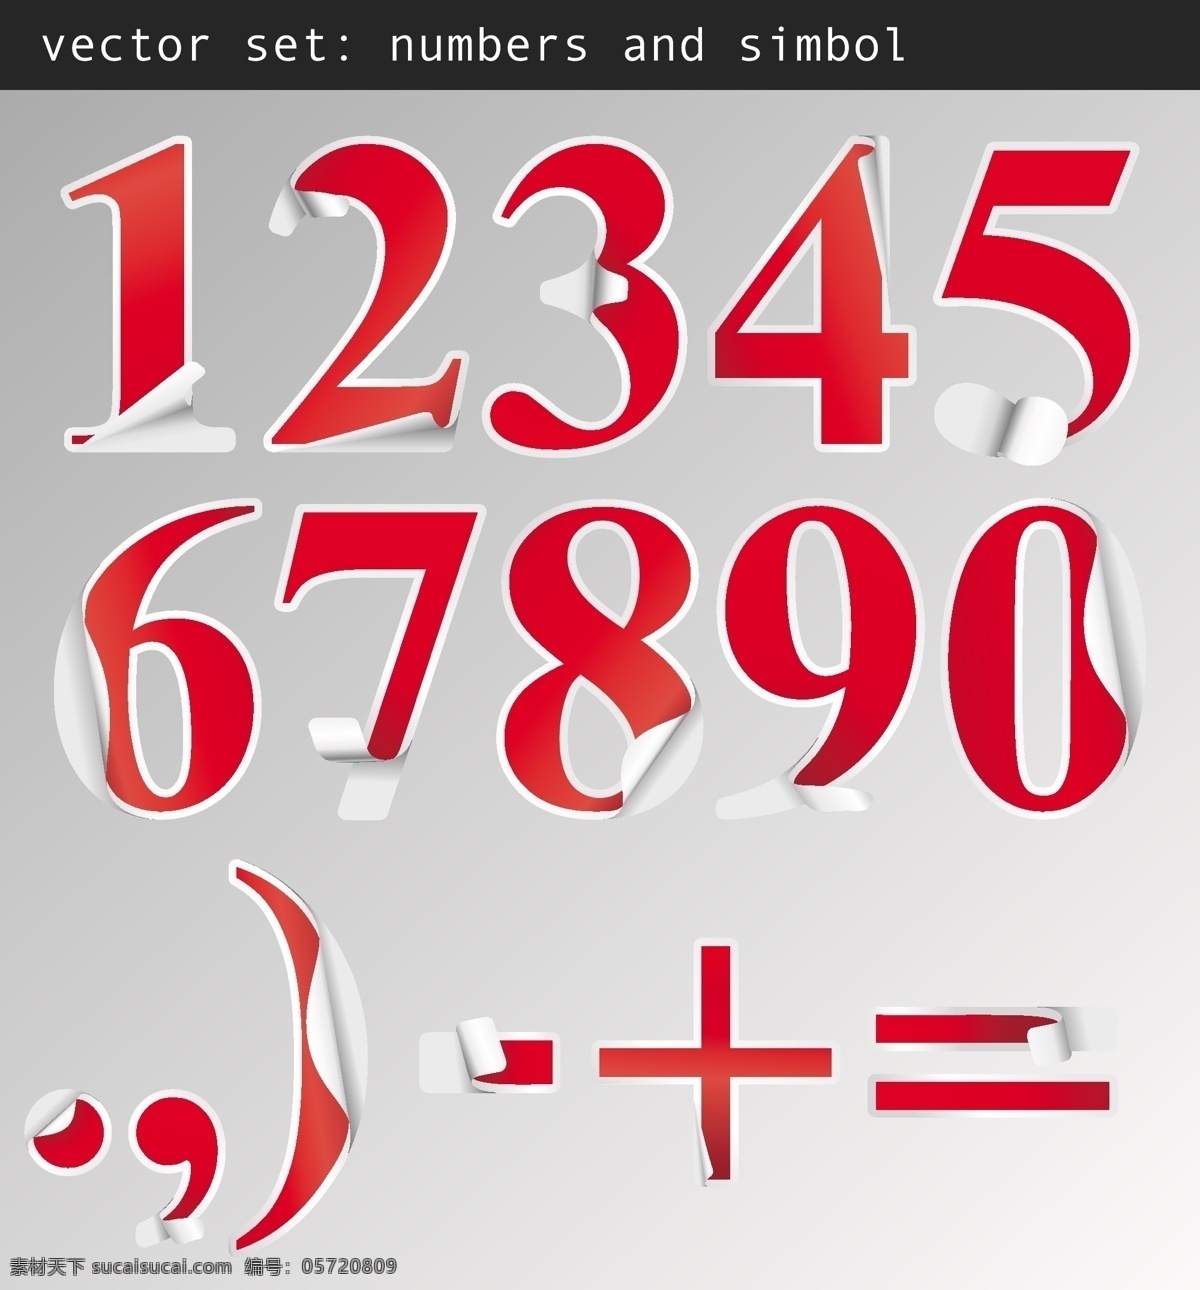 精美 实用 数字 贴纸 矢量 阿拉伯数字 红色 加号 立体 矢量数字 矢量图 减号